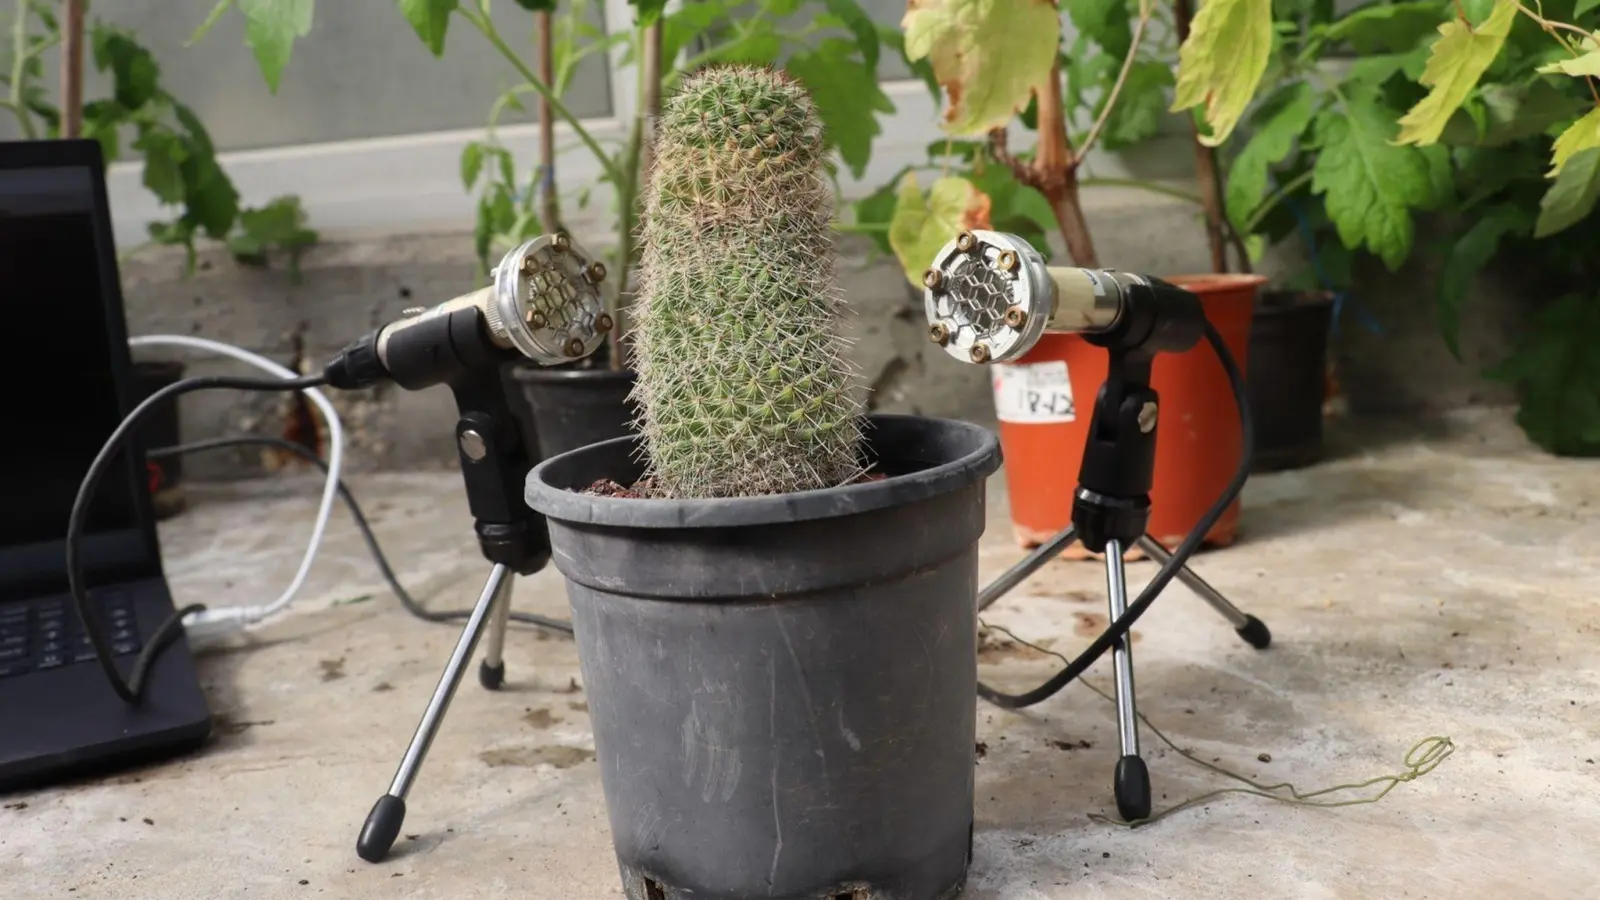 Sind Pflanzen gestresst, geben sie Geräusche von sich. Doch die Frequenz der Töne ist für Menschen zu hoch. Das haben Wissenschaftler der Universität Tel Aviv herausgefunden. (Foto: Tel Aviv University/dpa)